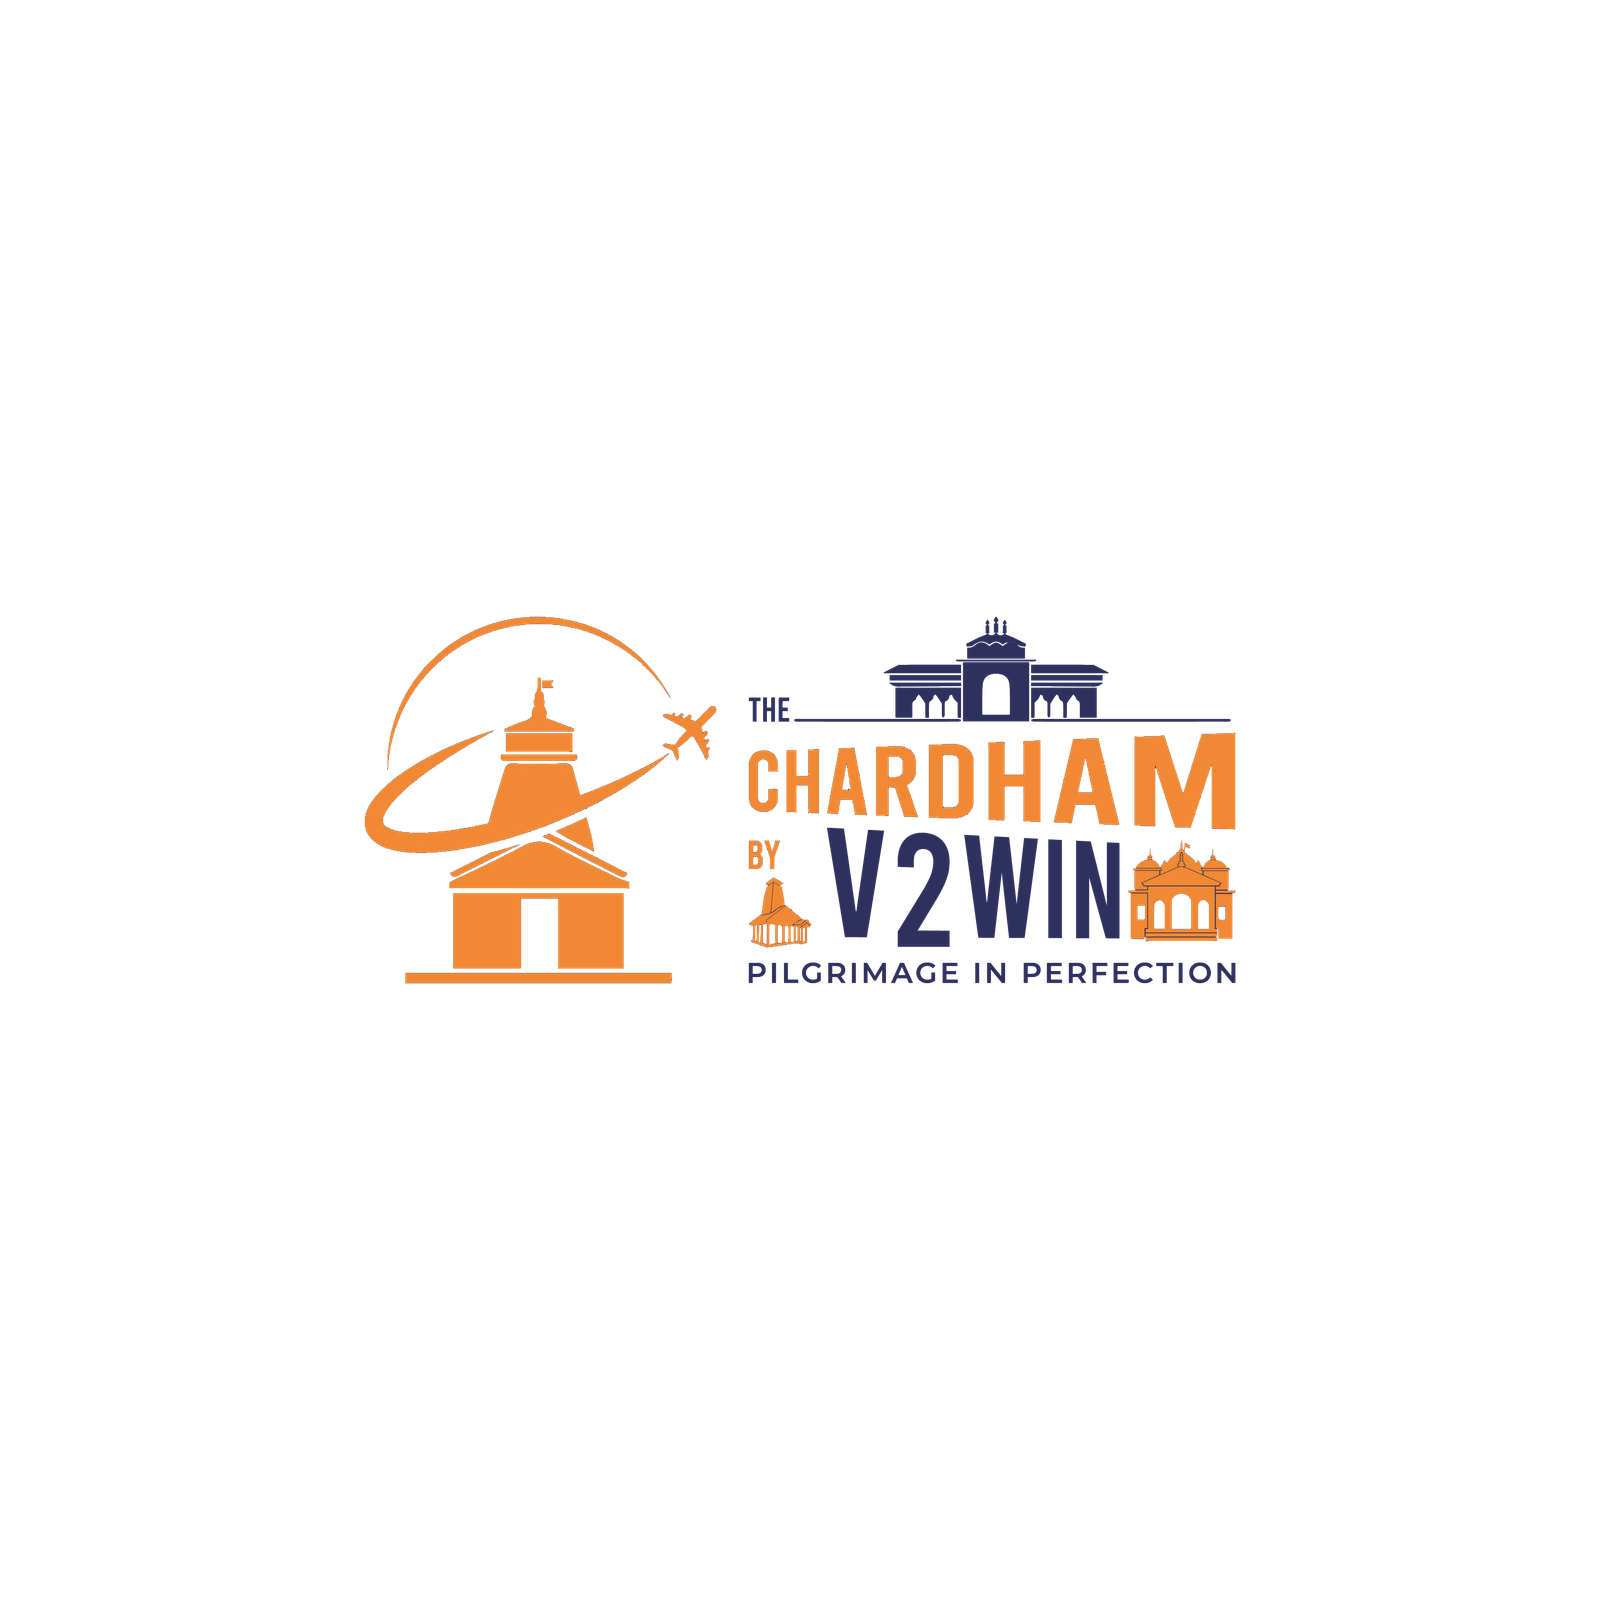 Chardham Yatra Serenity - Spiritual journey through The Chardham